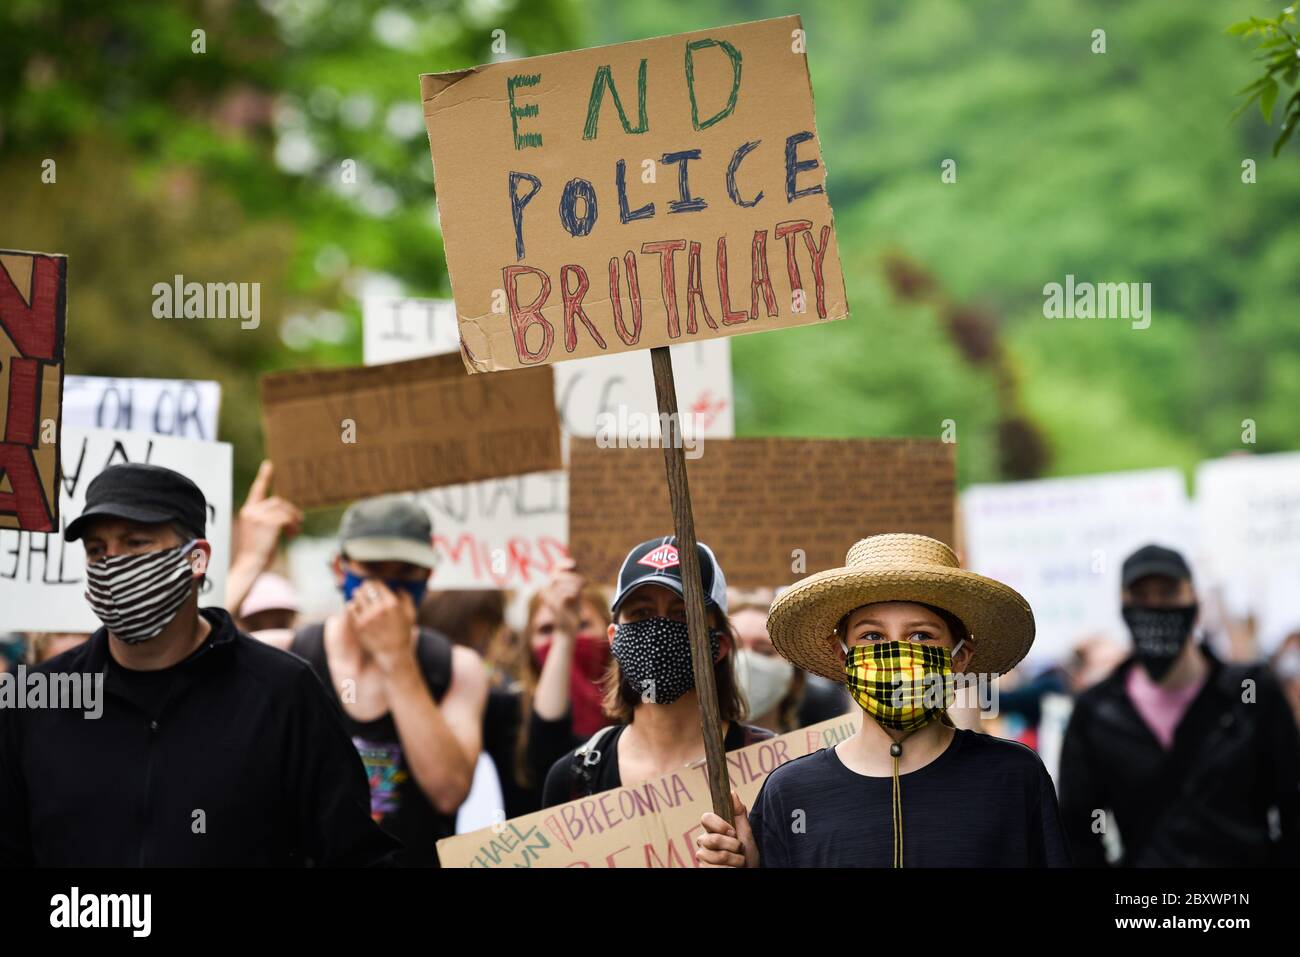 Protestation contre le meurtre de personnes de couleur par la police aux États-Unis (Black Lives Matter), à la maison d'État du Vermont et dans les rues environnantes, Montpelier, VT, États-Unis. Banque D'Images